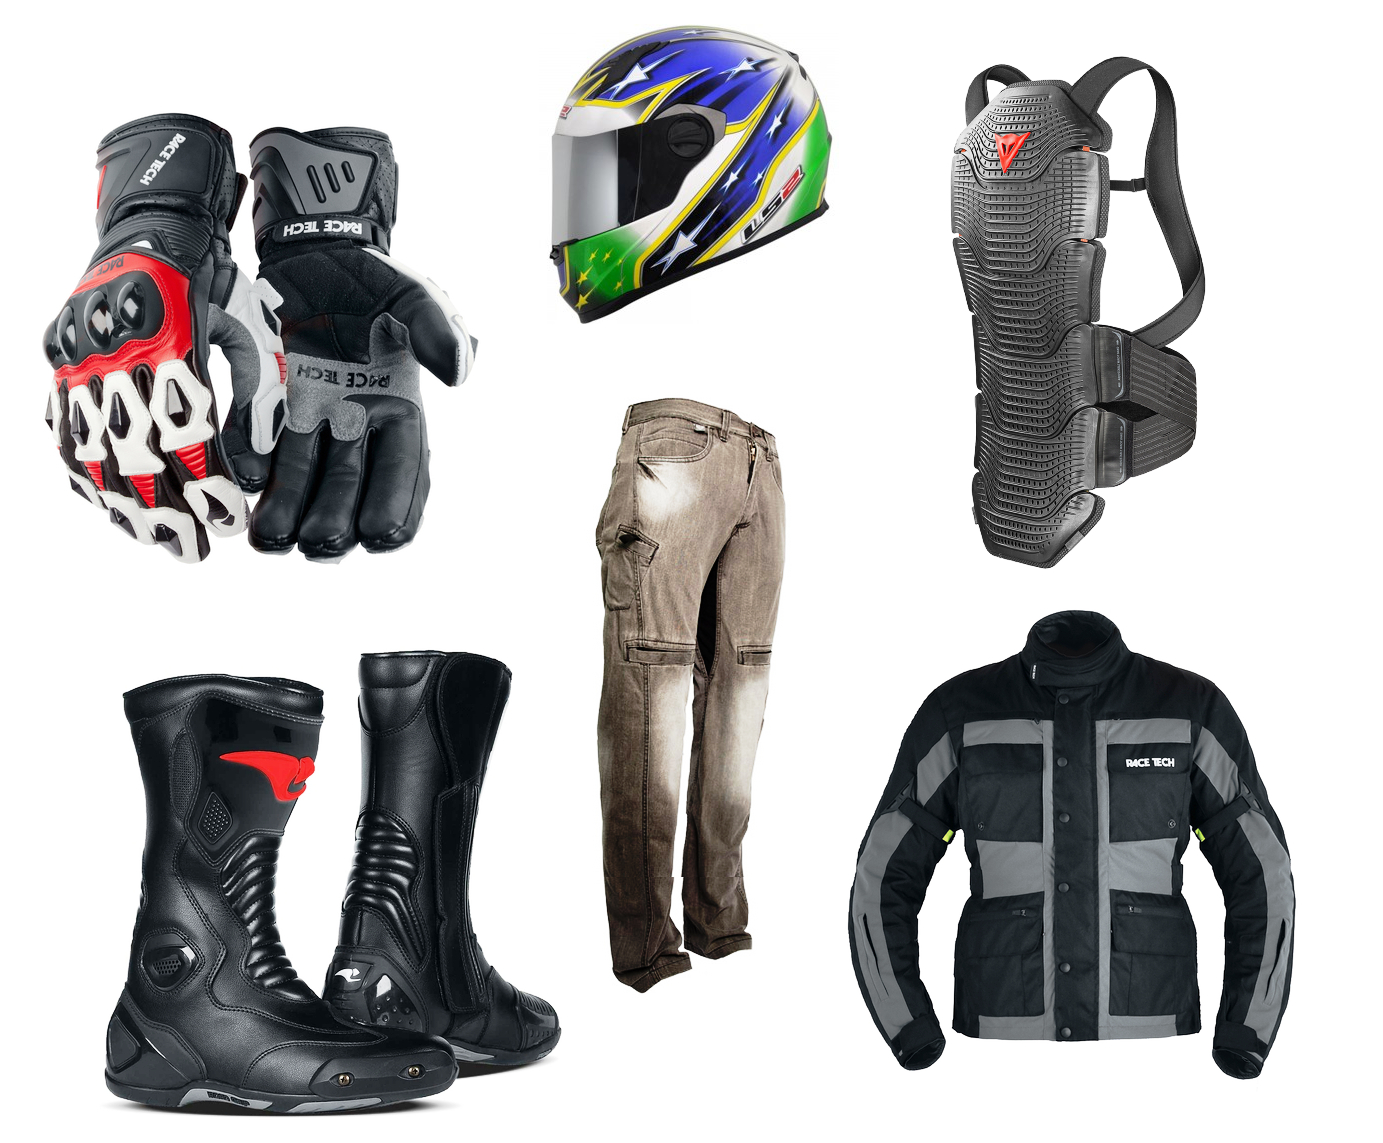 jaqueta de proteção para motociclista